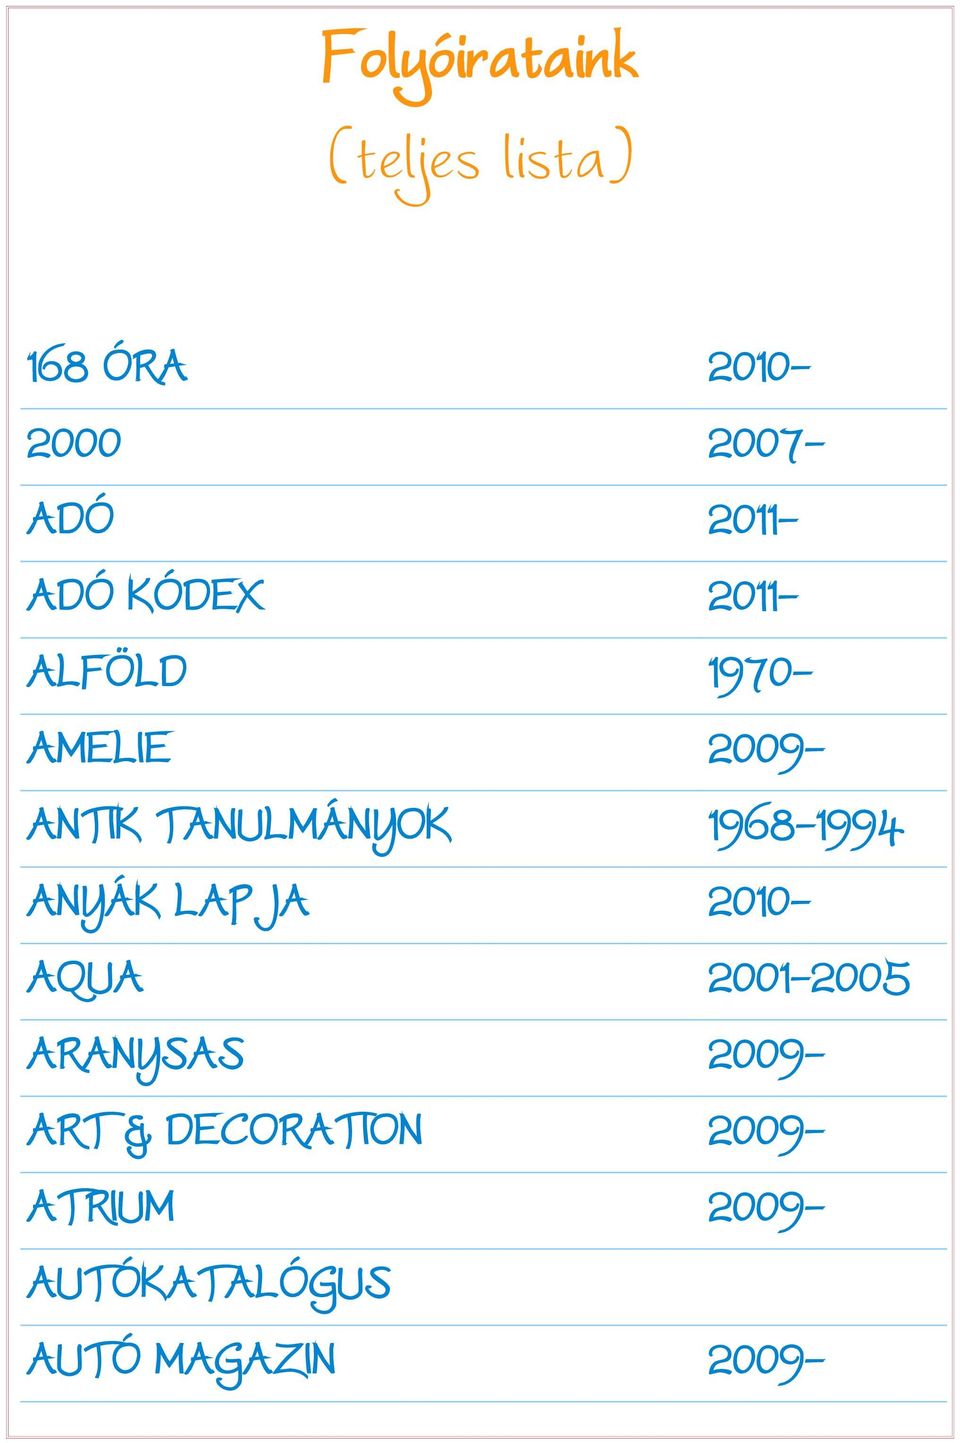 1968-1994 ANYÁK LAPJA 2010- AQUA 2001-2005 ARANYSAS 2009- ART